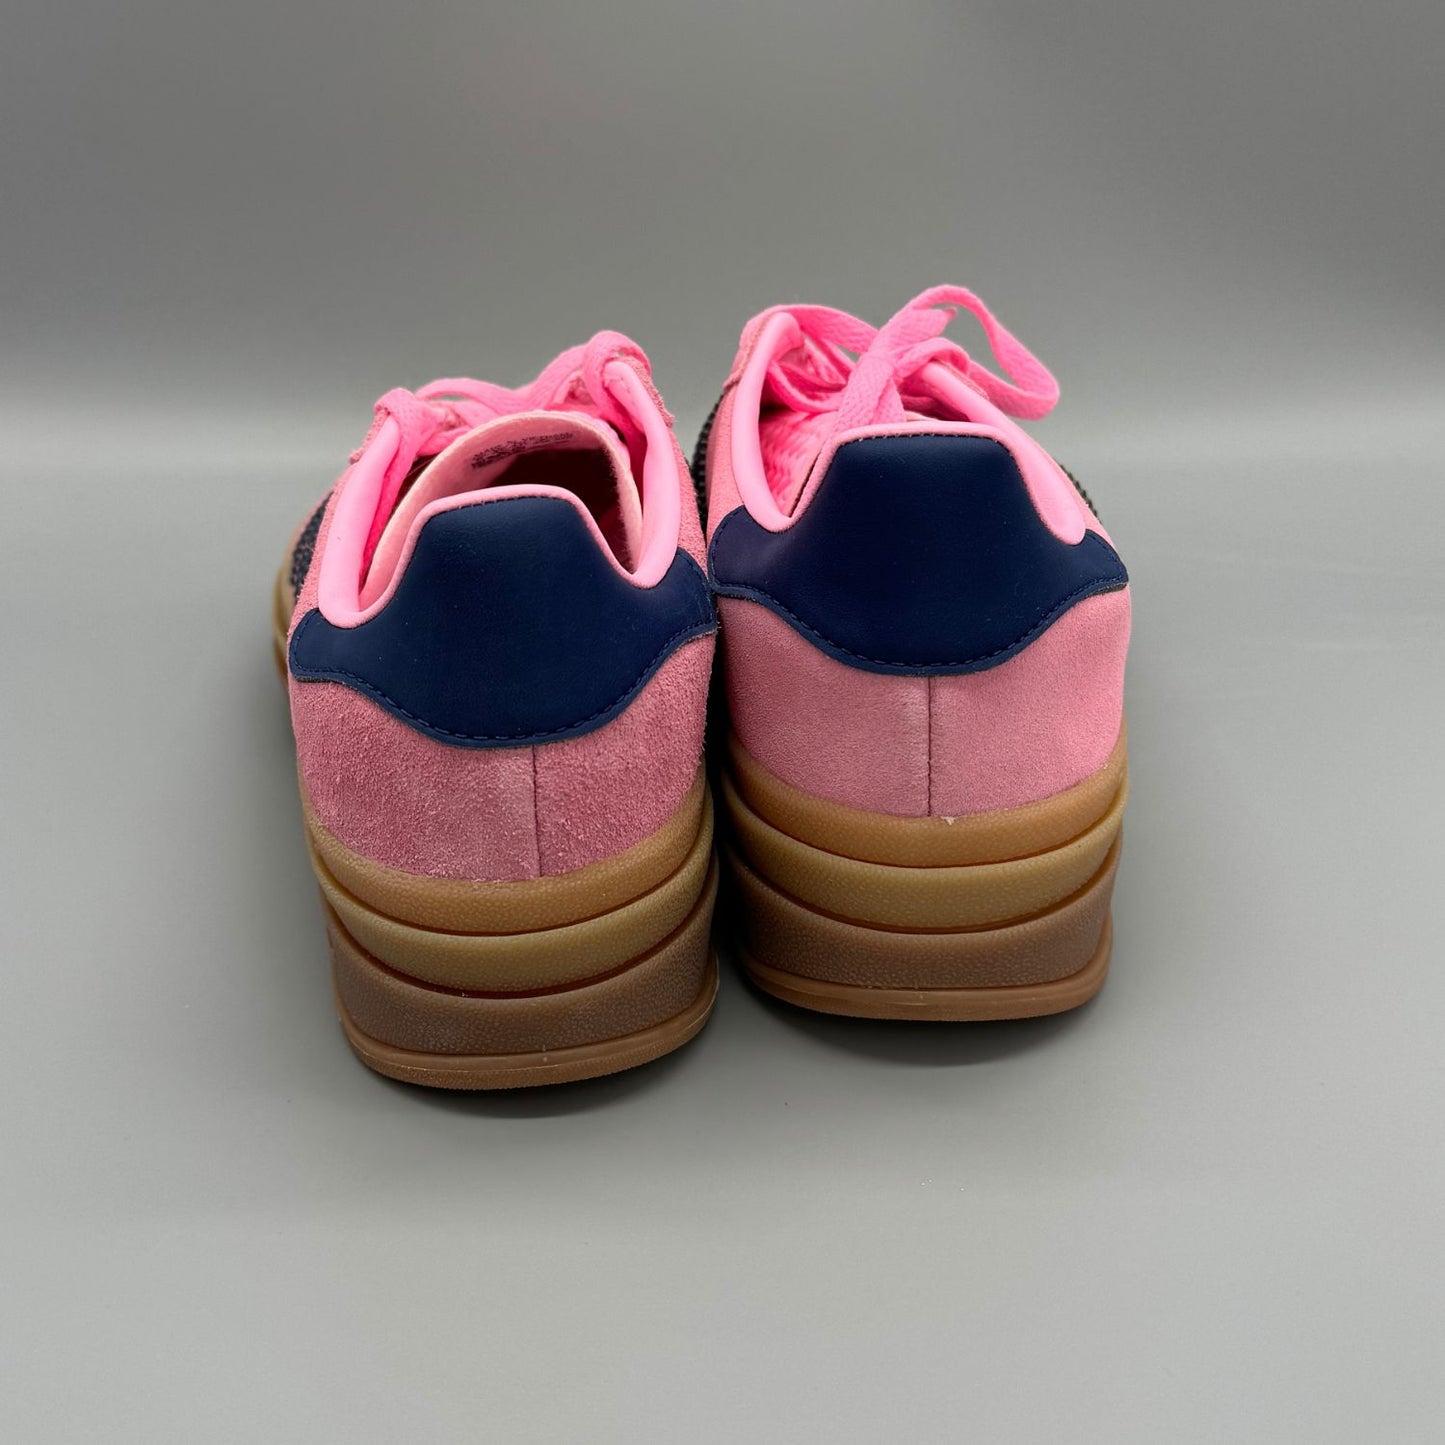 Adidas Gazelle Bold Pink Glow (W) - Sneakerterritory; Sneaker Territory; Adidas Gazelle Bold pink